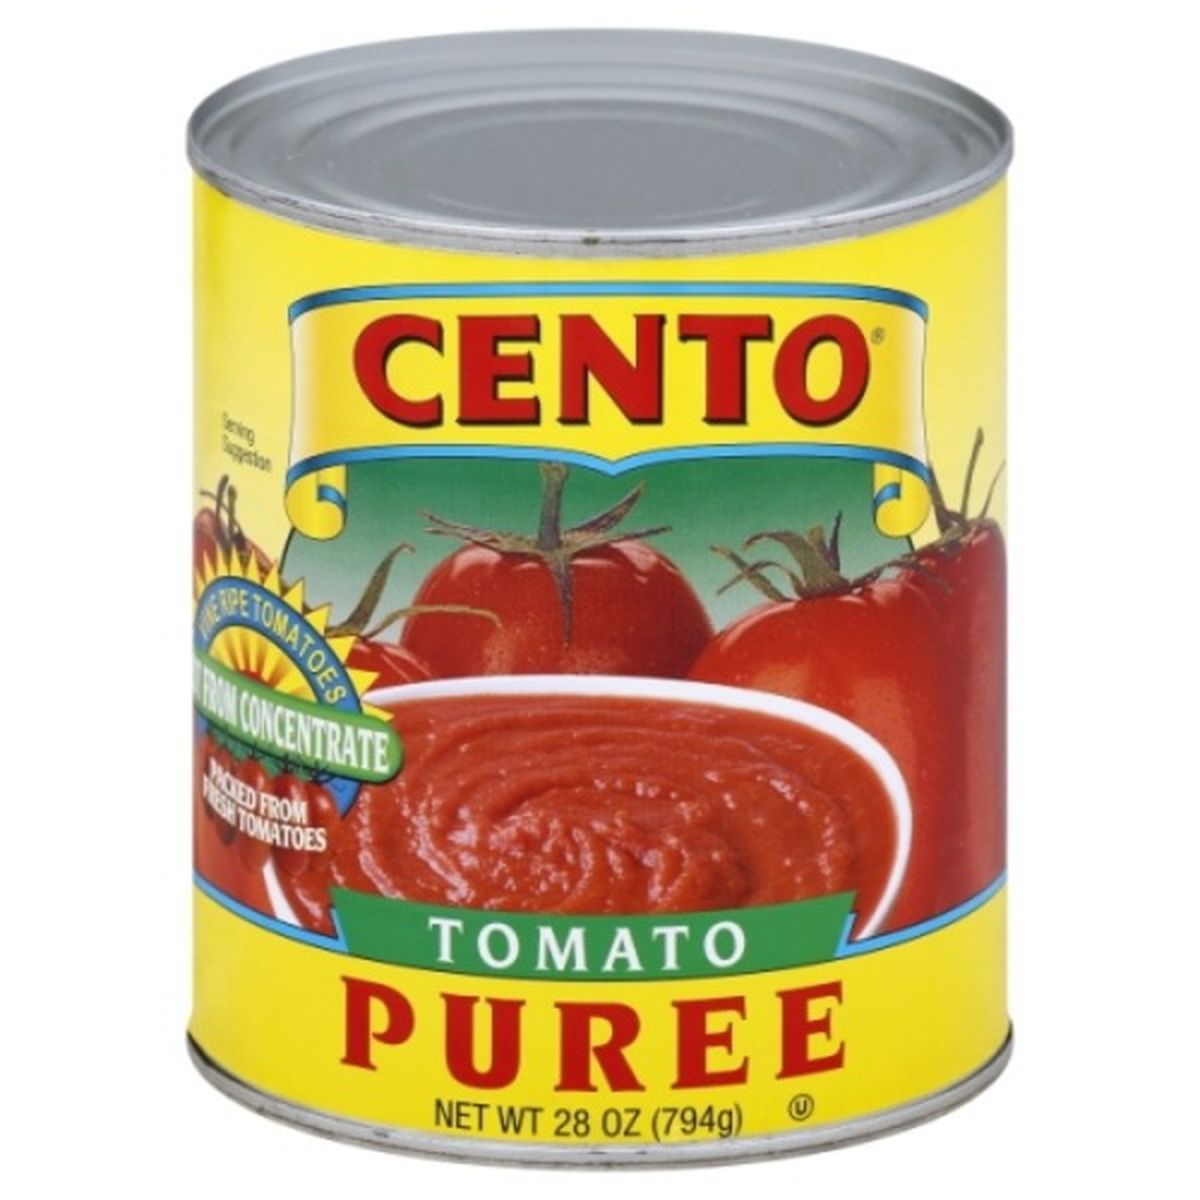 Calories in Cento Tomato Puree